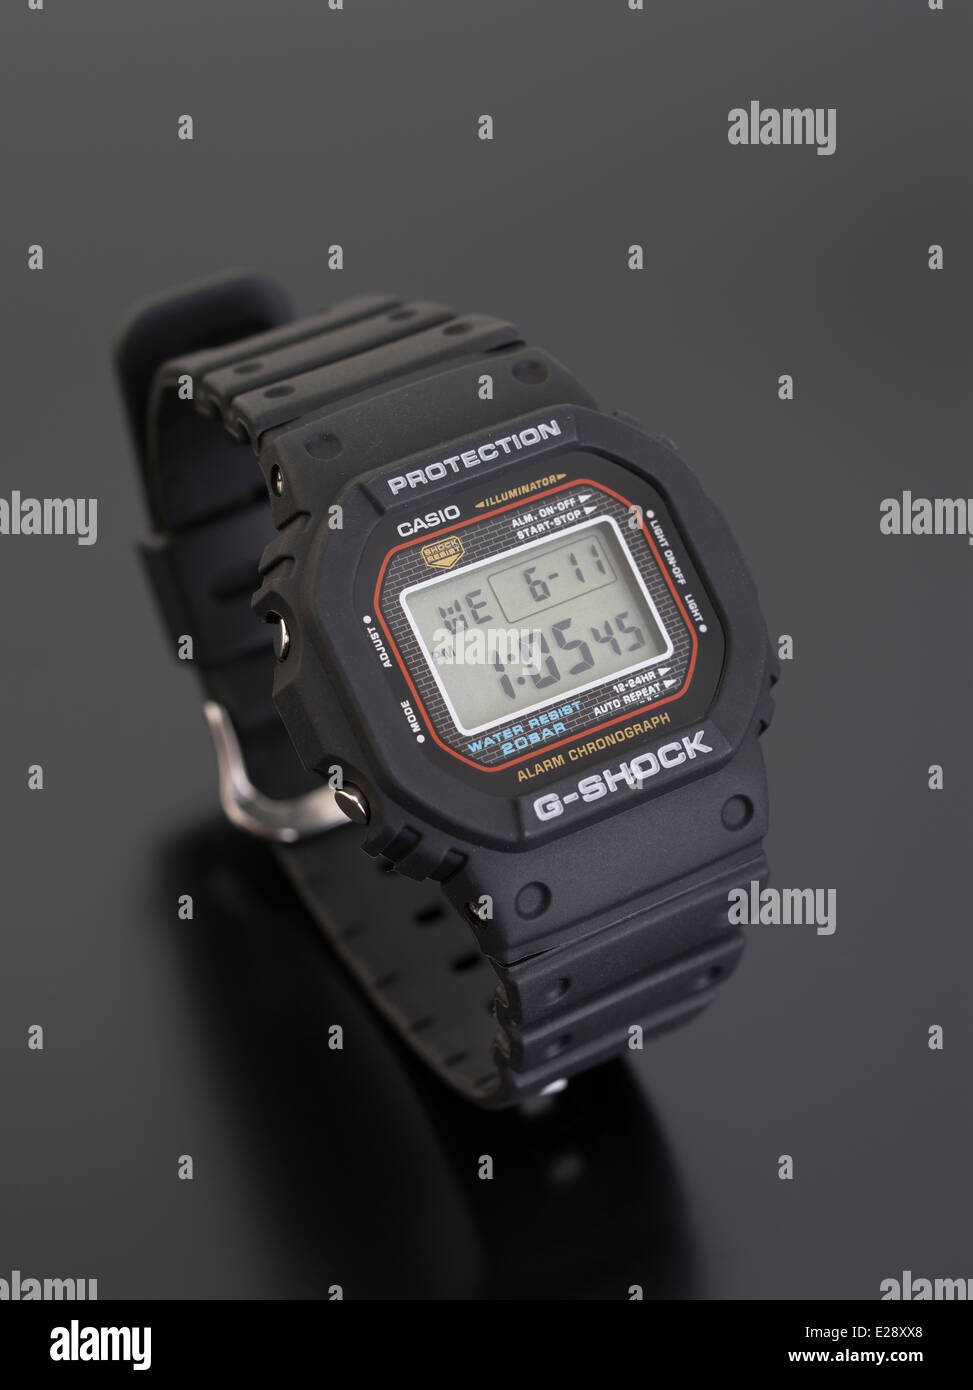 CASIO G-SHOCK DW-5000C reloj digital, publicado por primera vez en 1983 Foto de stock